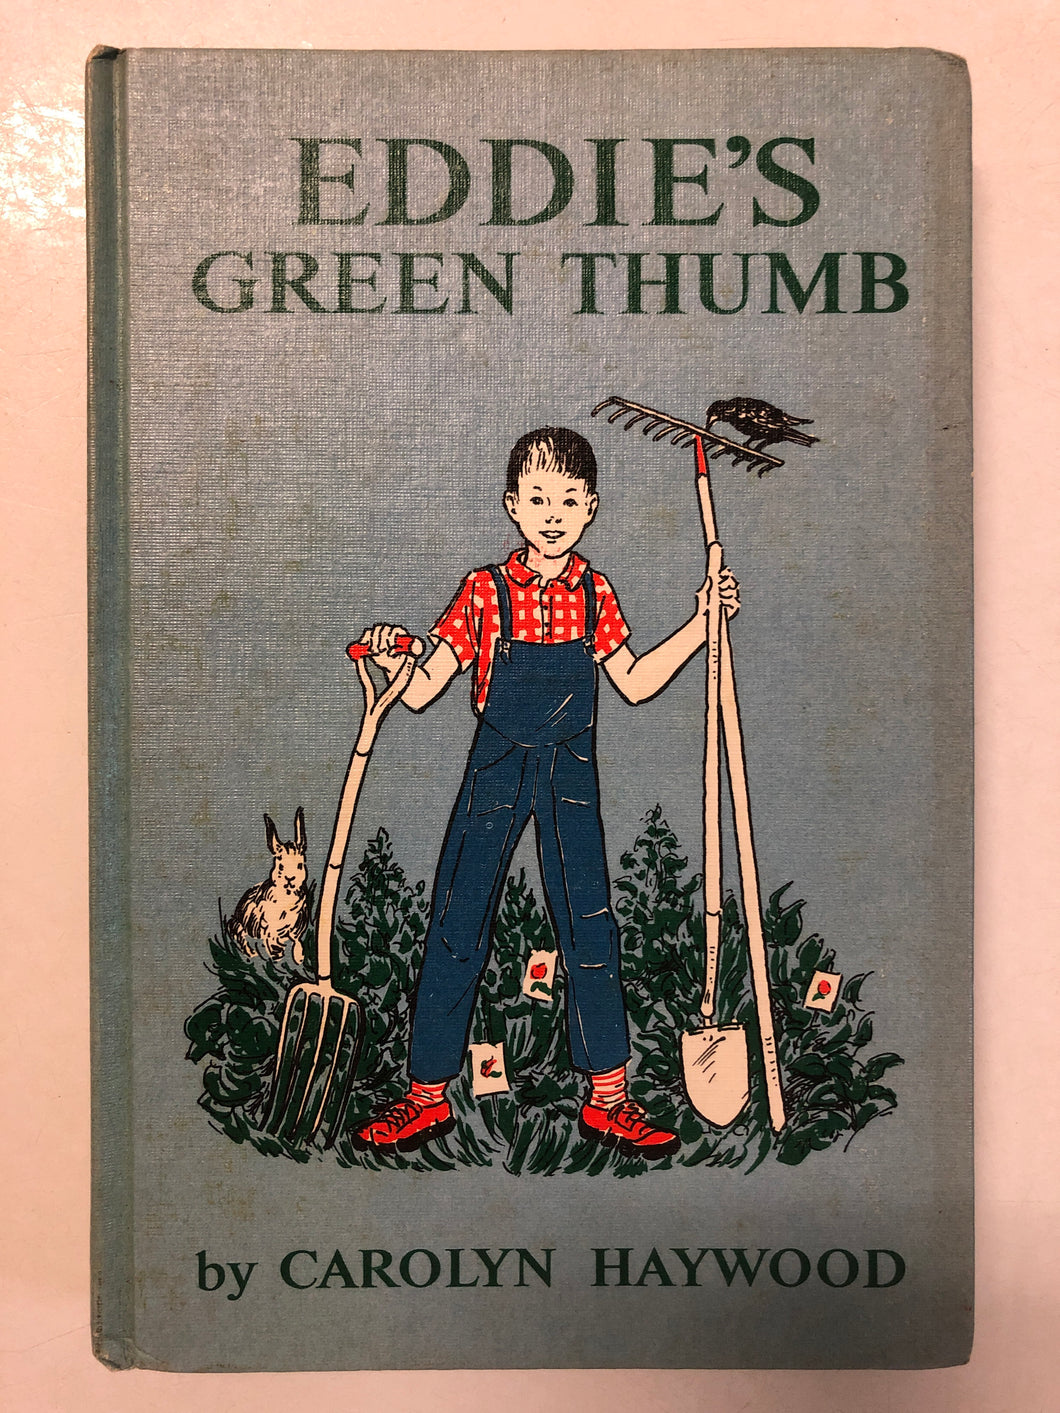 Eddie’s Green Thumb - Slick Cat Books 